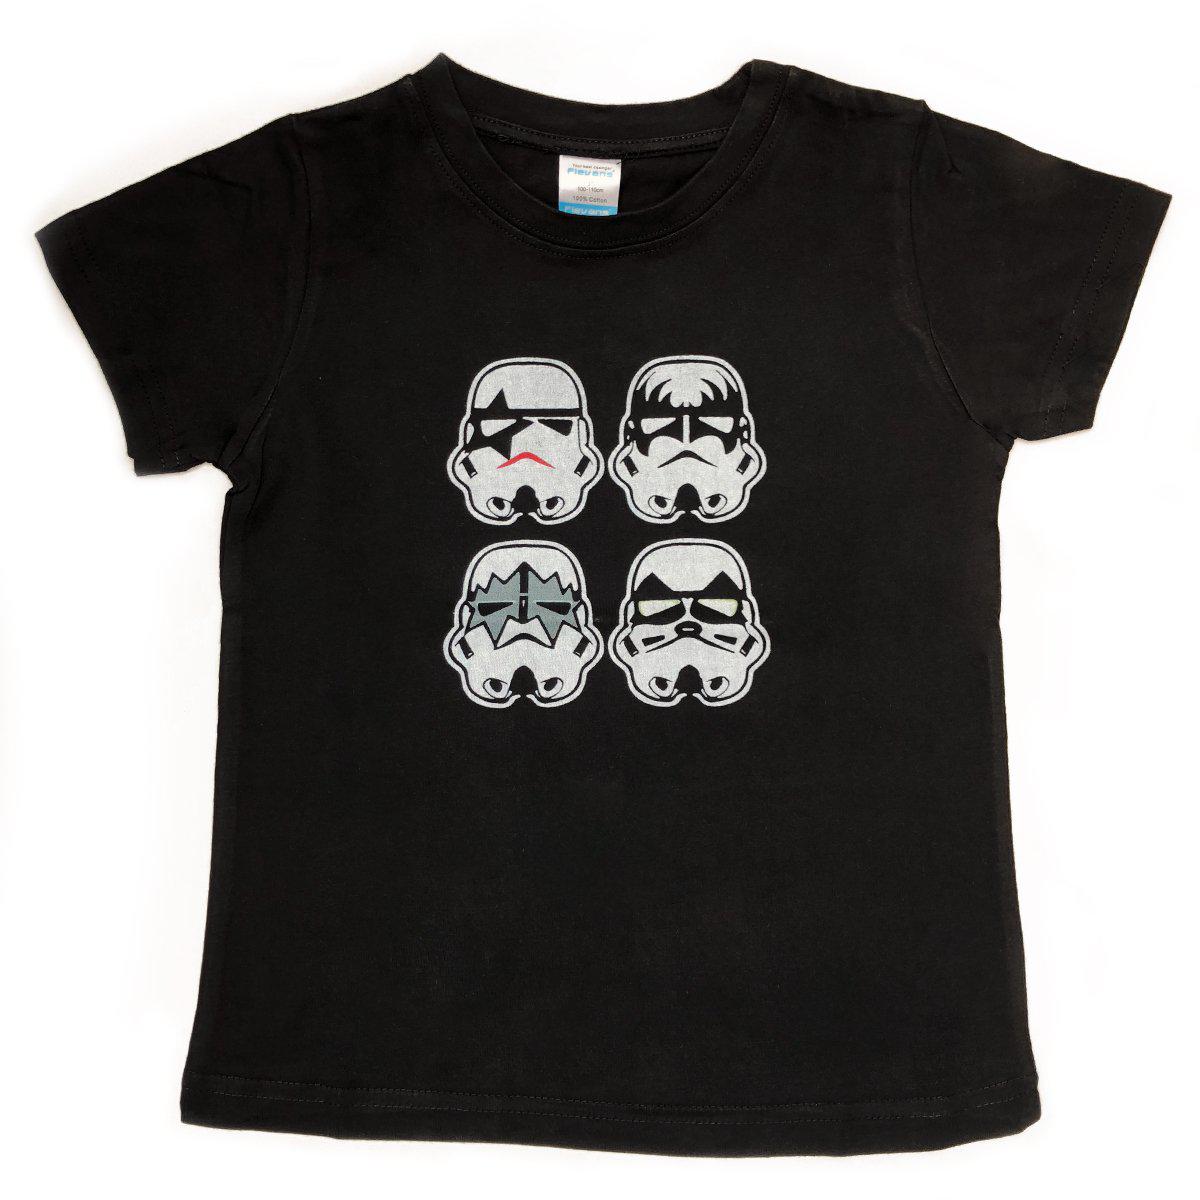 Kids Kiss Storm trooper t-shirt in black